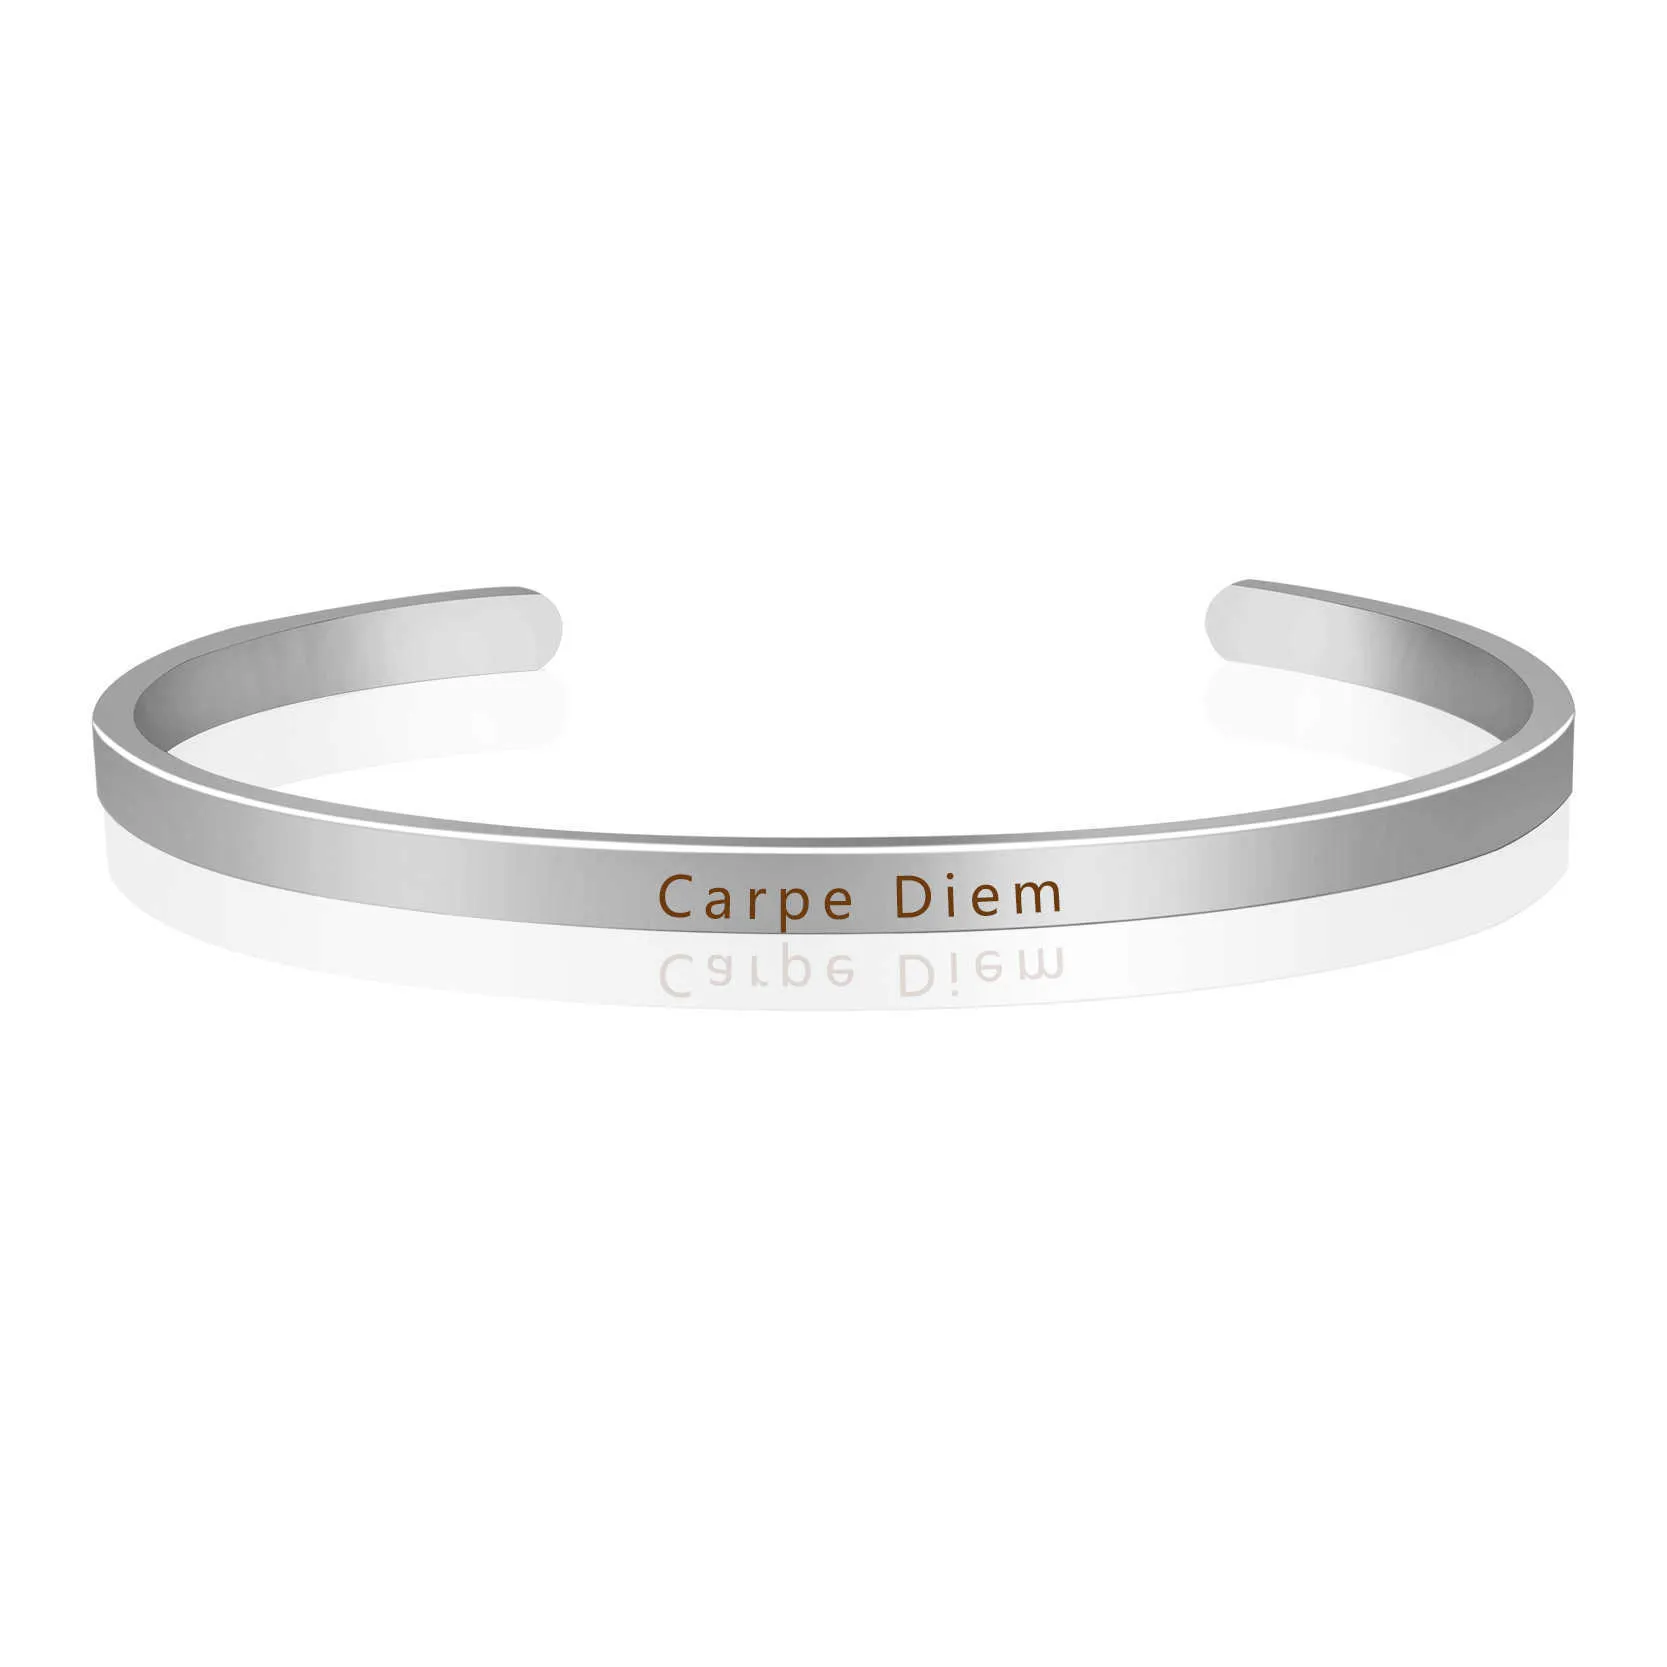 Carpe diem inspirerende positieve manchet armband gegraveerde quote armbanden unieke persoonlijkheid cadeau voor vriend en familie Q0719